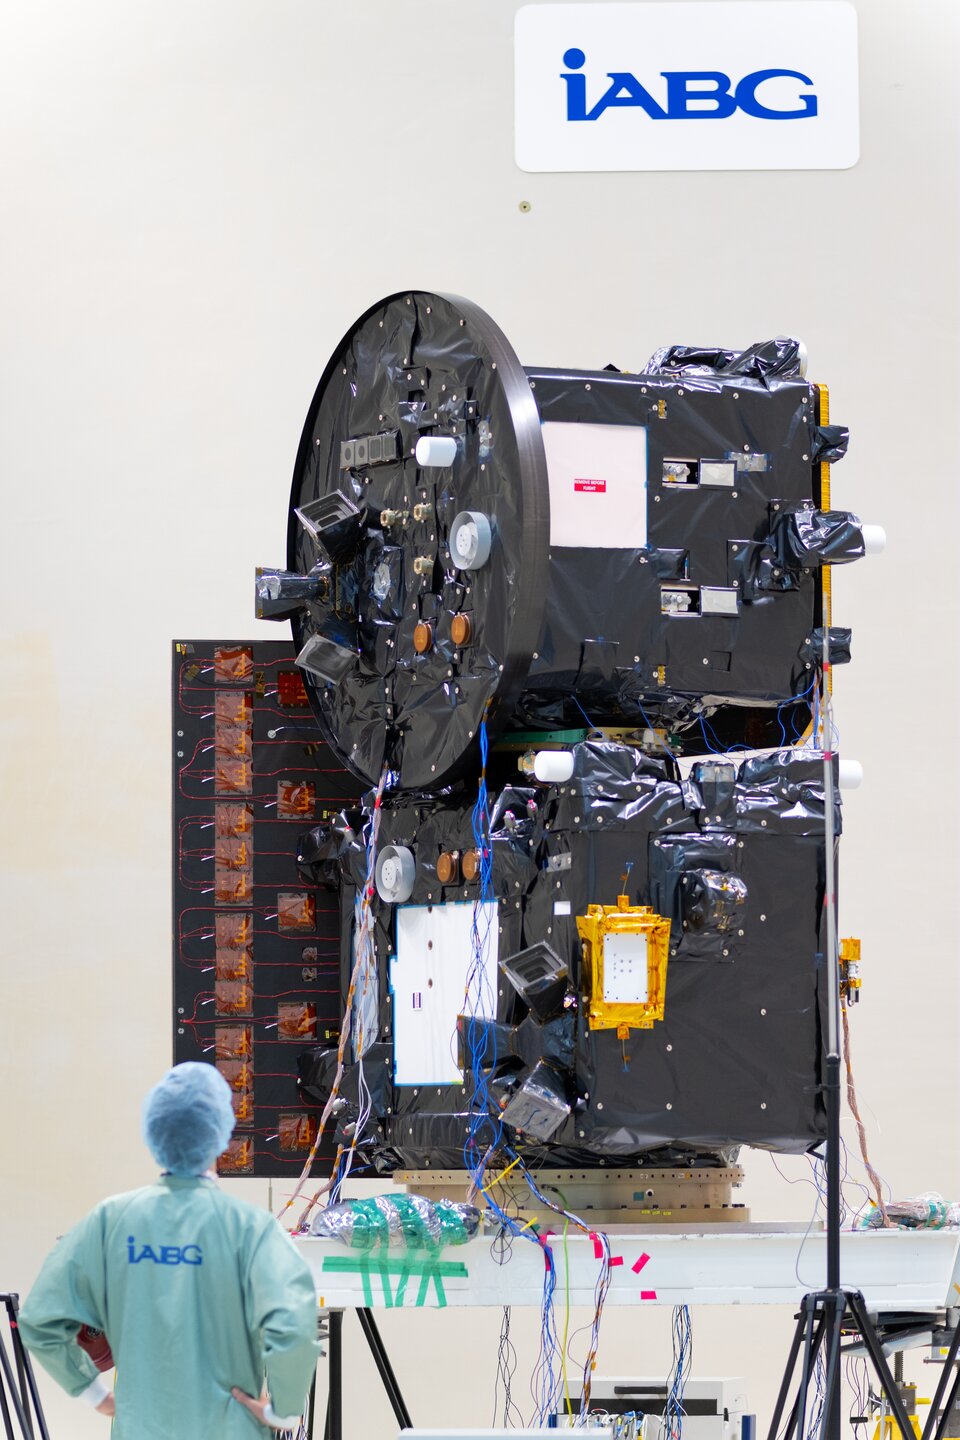 Stacked Proba-3 satellites